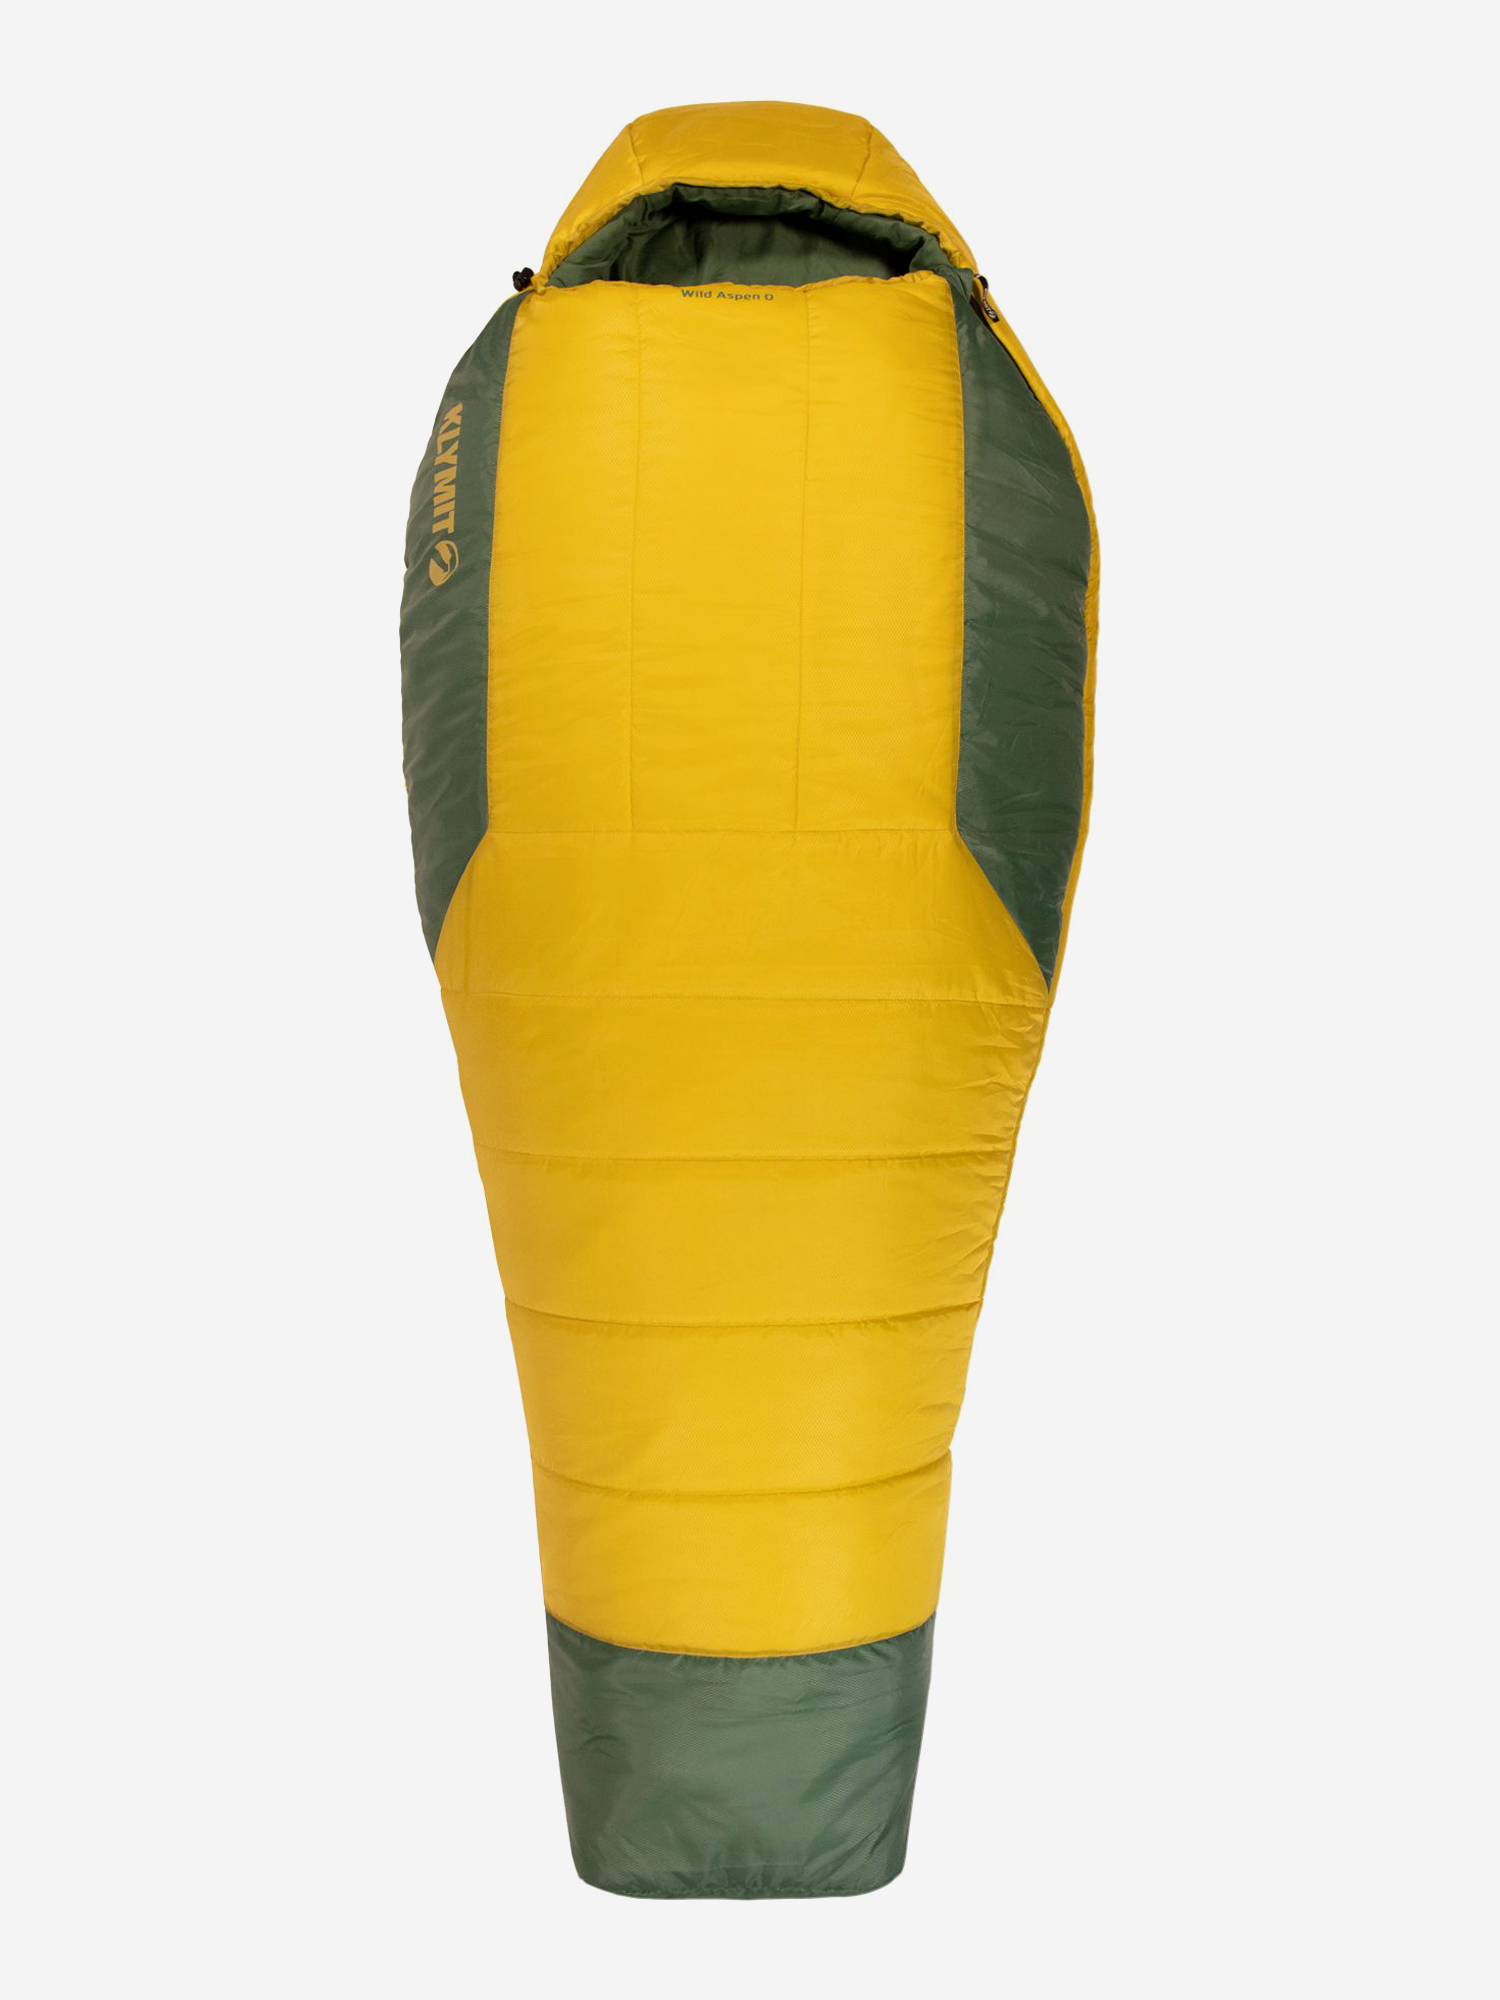 Спальный мешок KLYMIT Wild Aspen 0 Large (13WAYL00D) желто-зеленый, Желтый спальный мешок klymit wild aspen 0 extra large 13wayl00e желто зеленый желтый